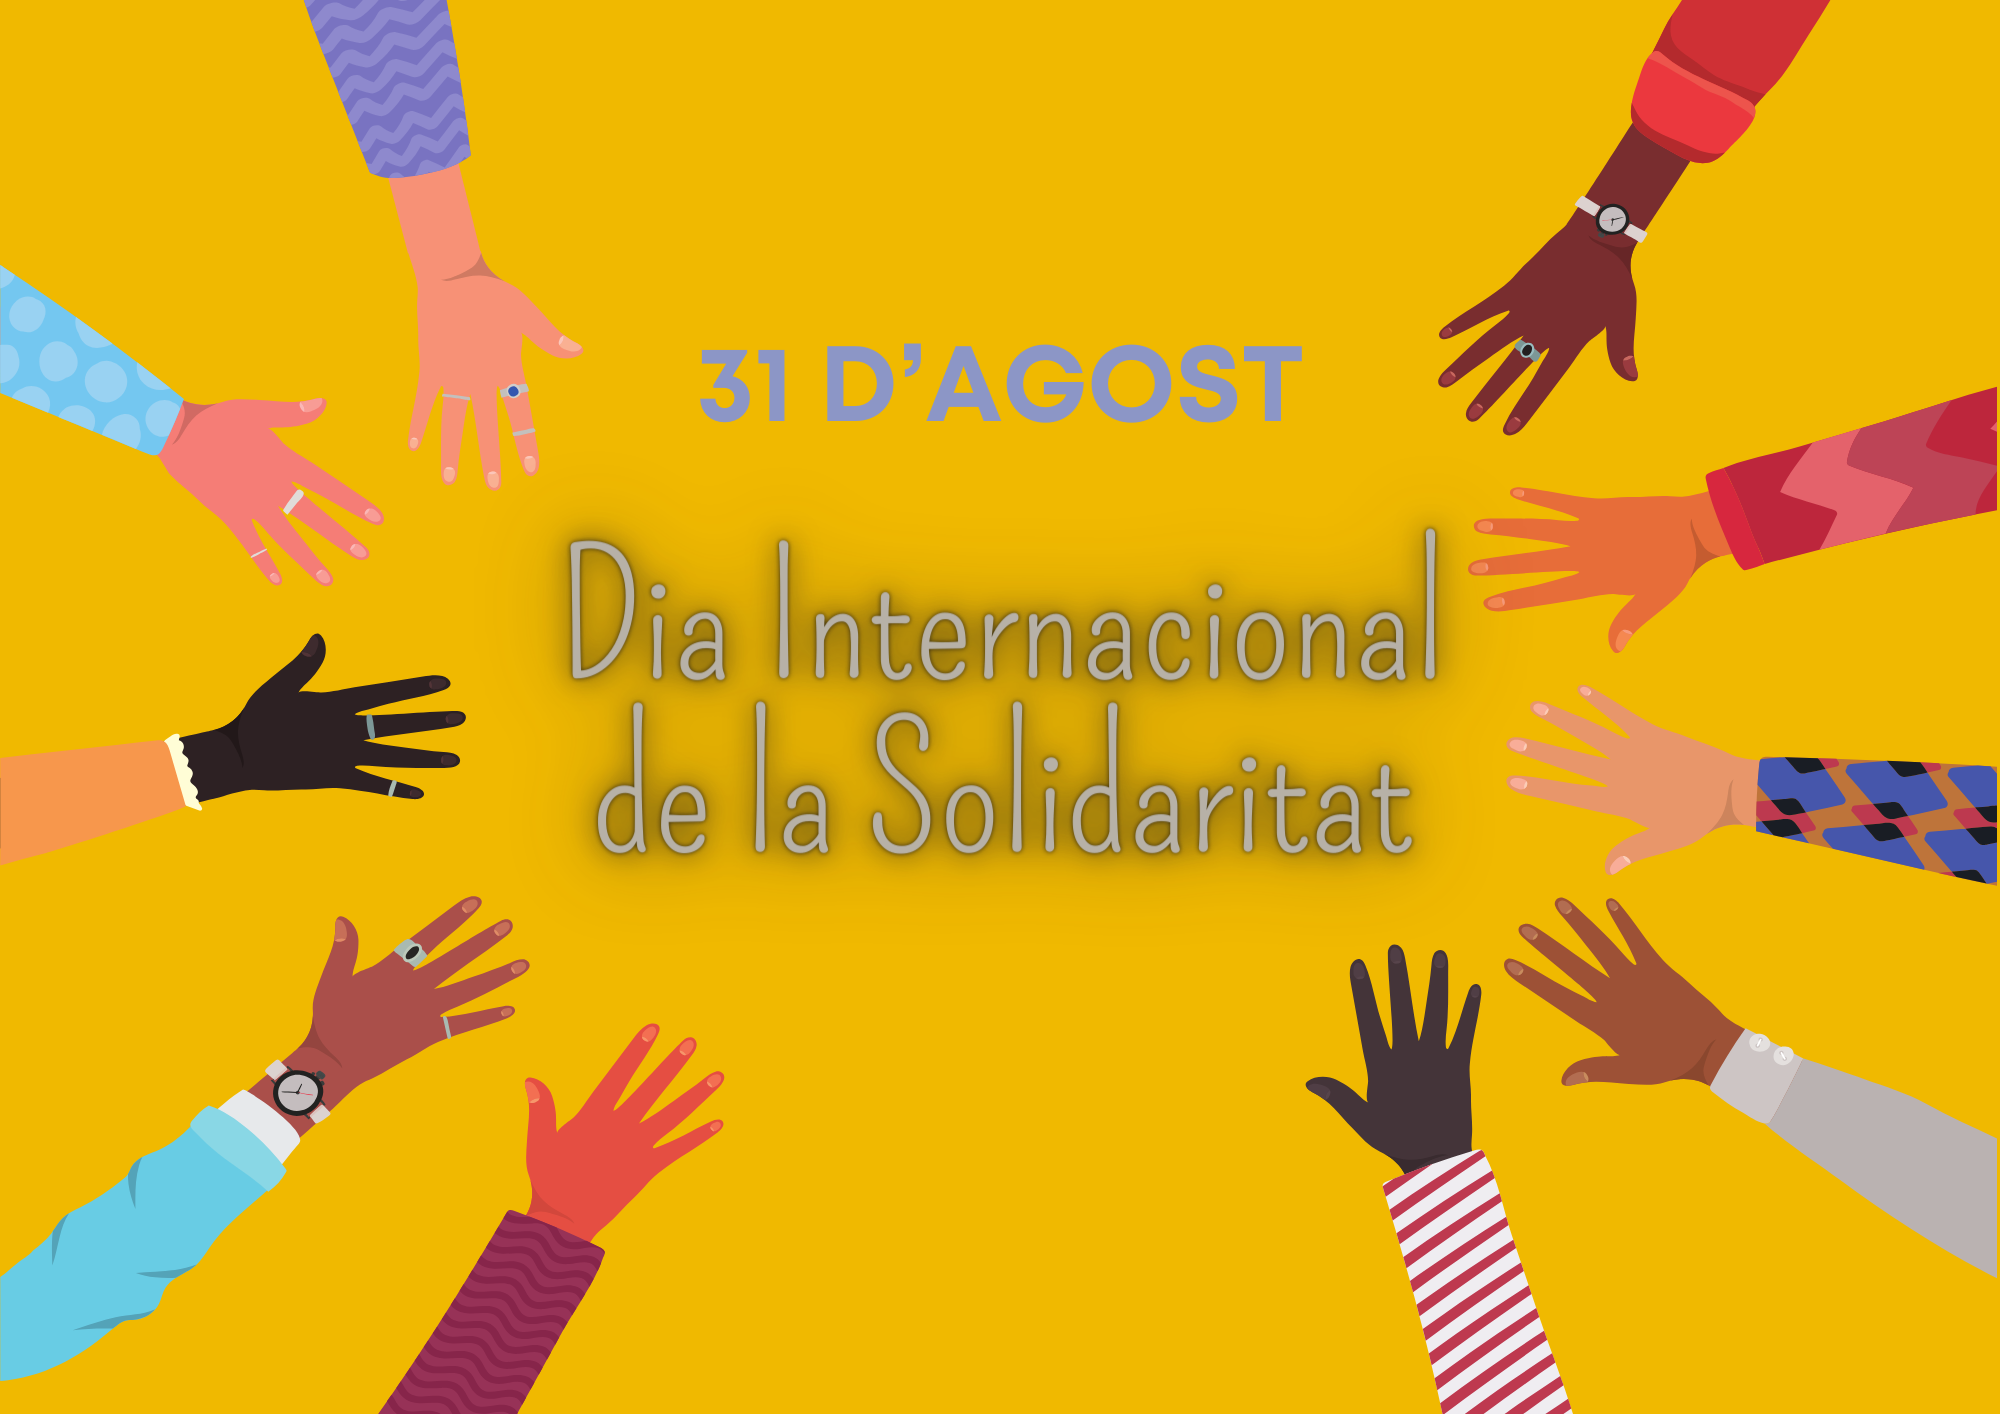 Dia Internacional de la Solidaritat